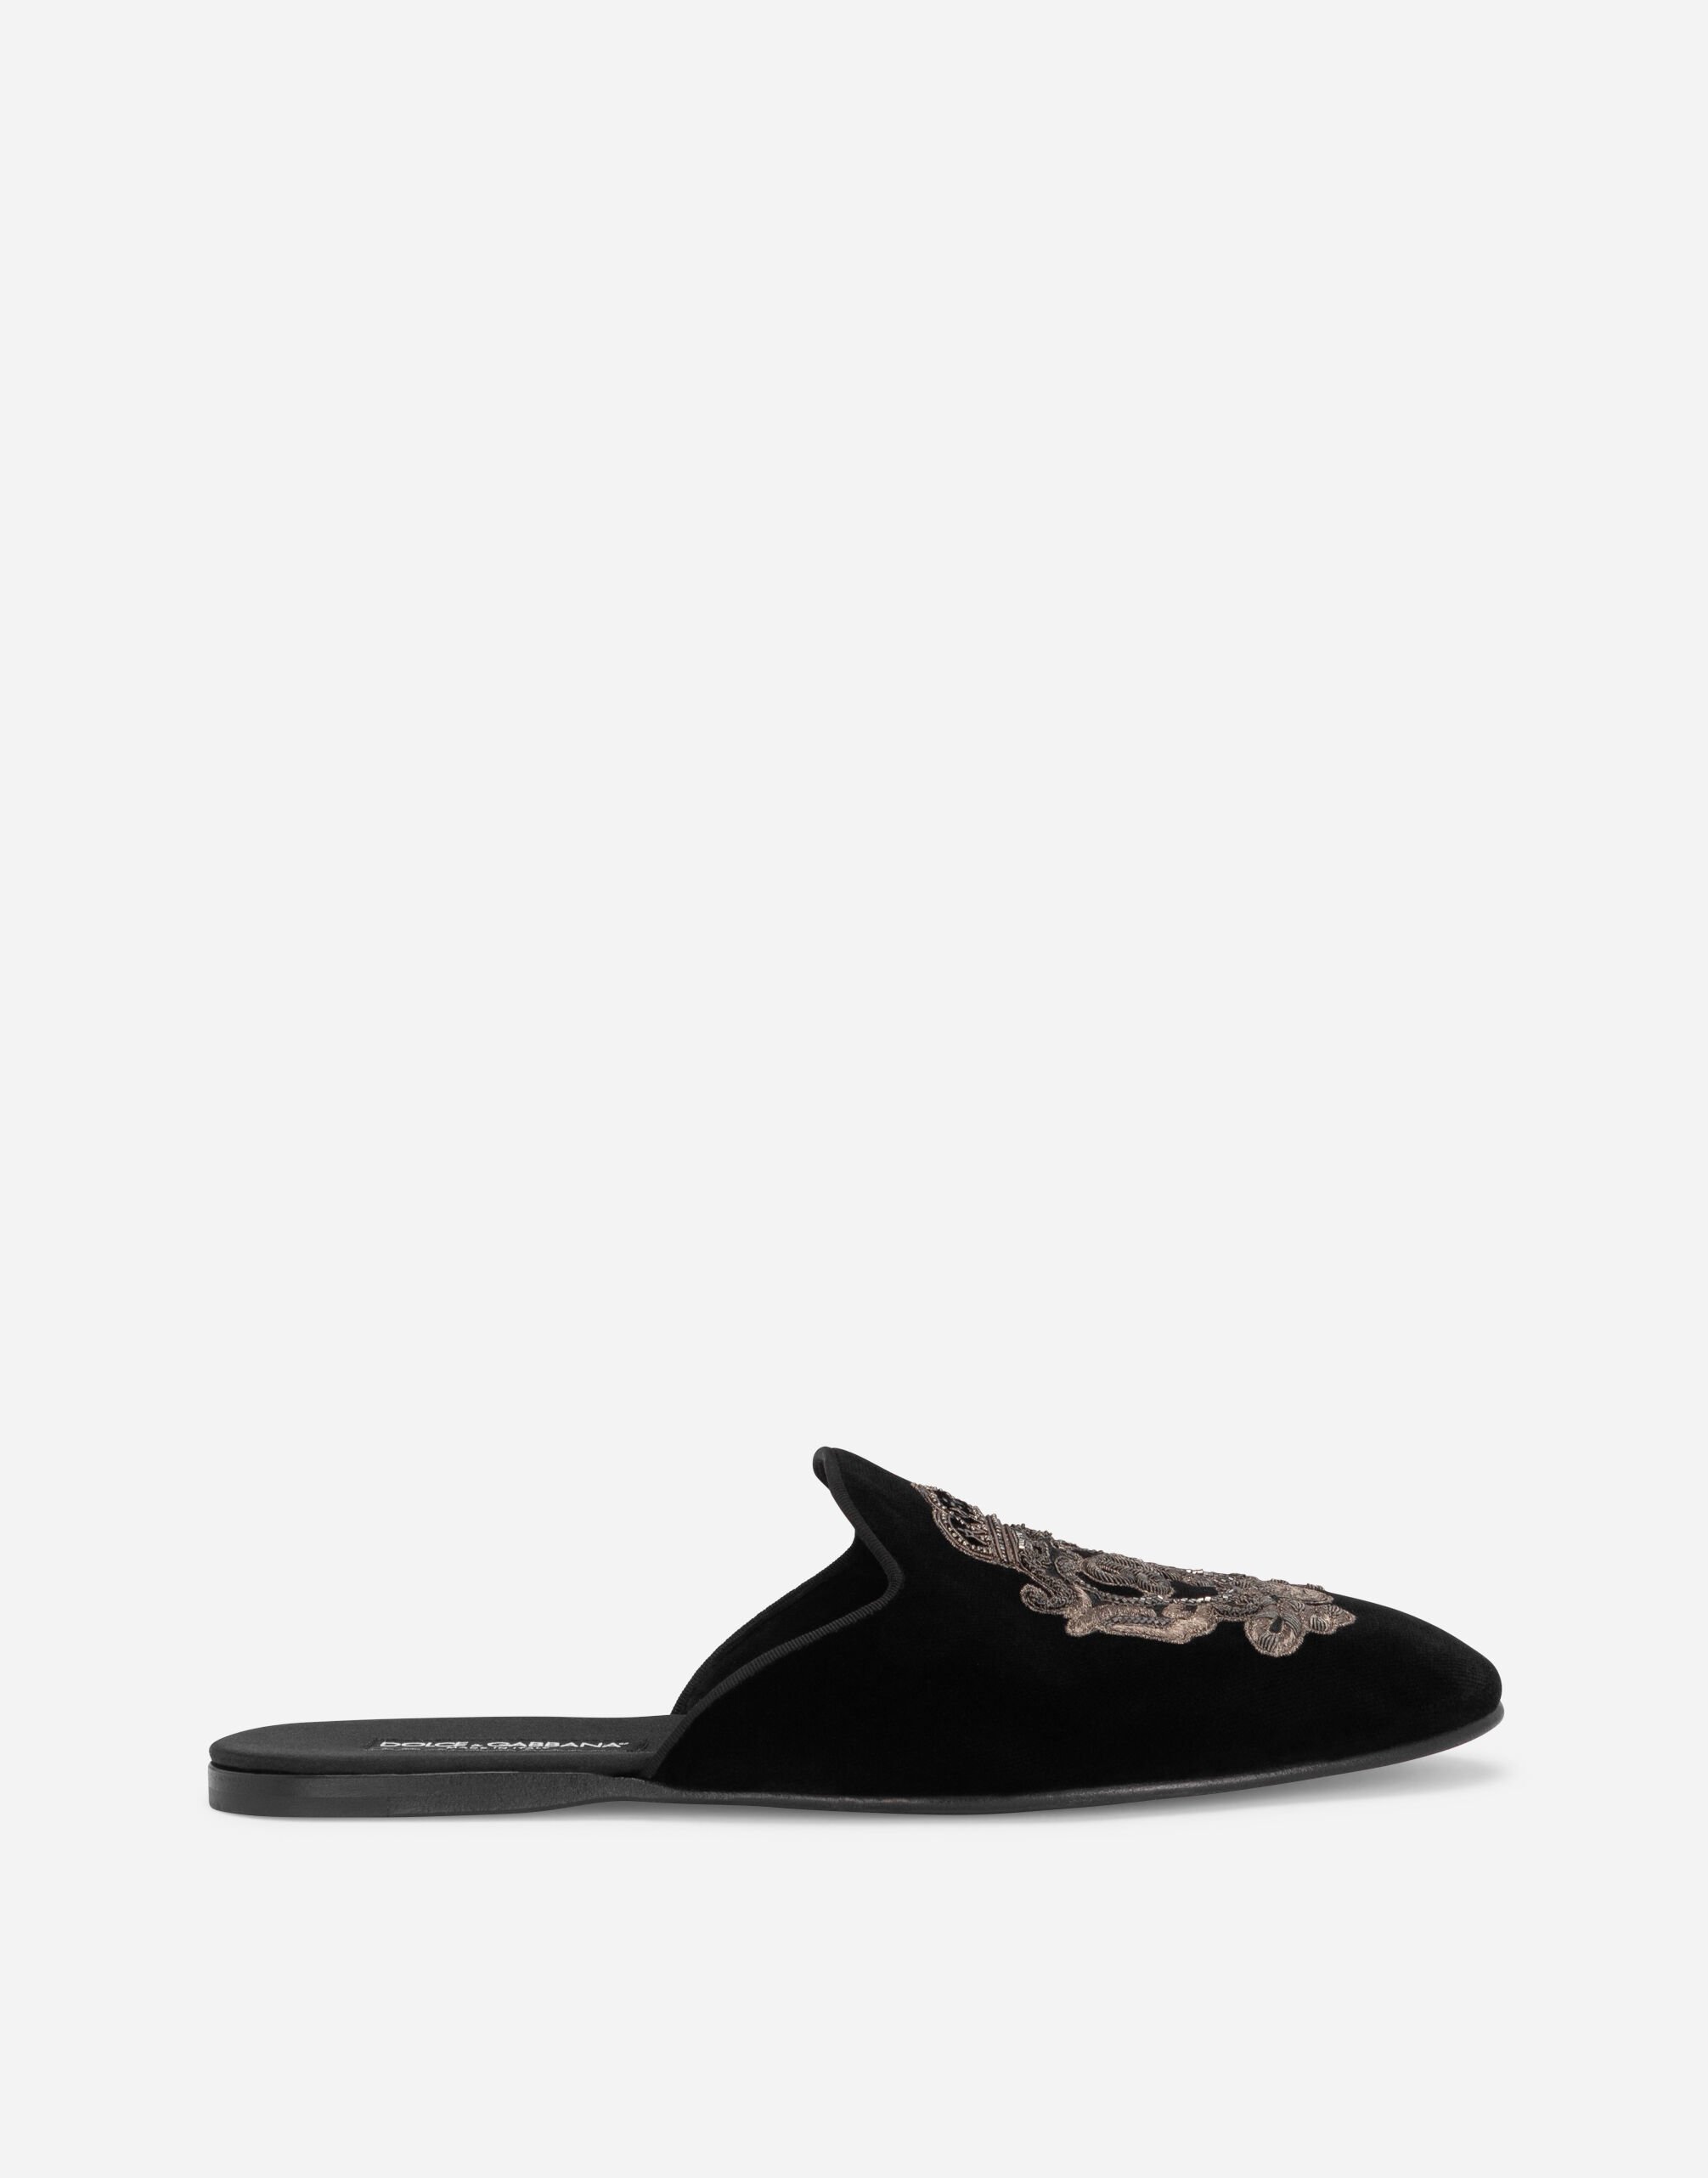 Dolce & Gabbana Slipper de terciopelo con blasón bordado Negro A10703A1203